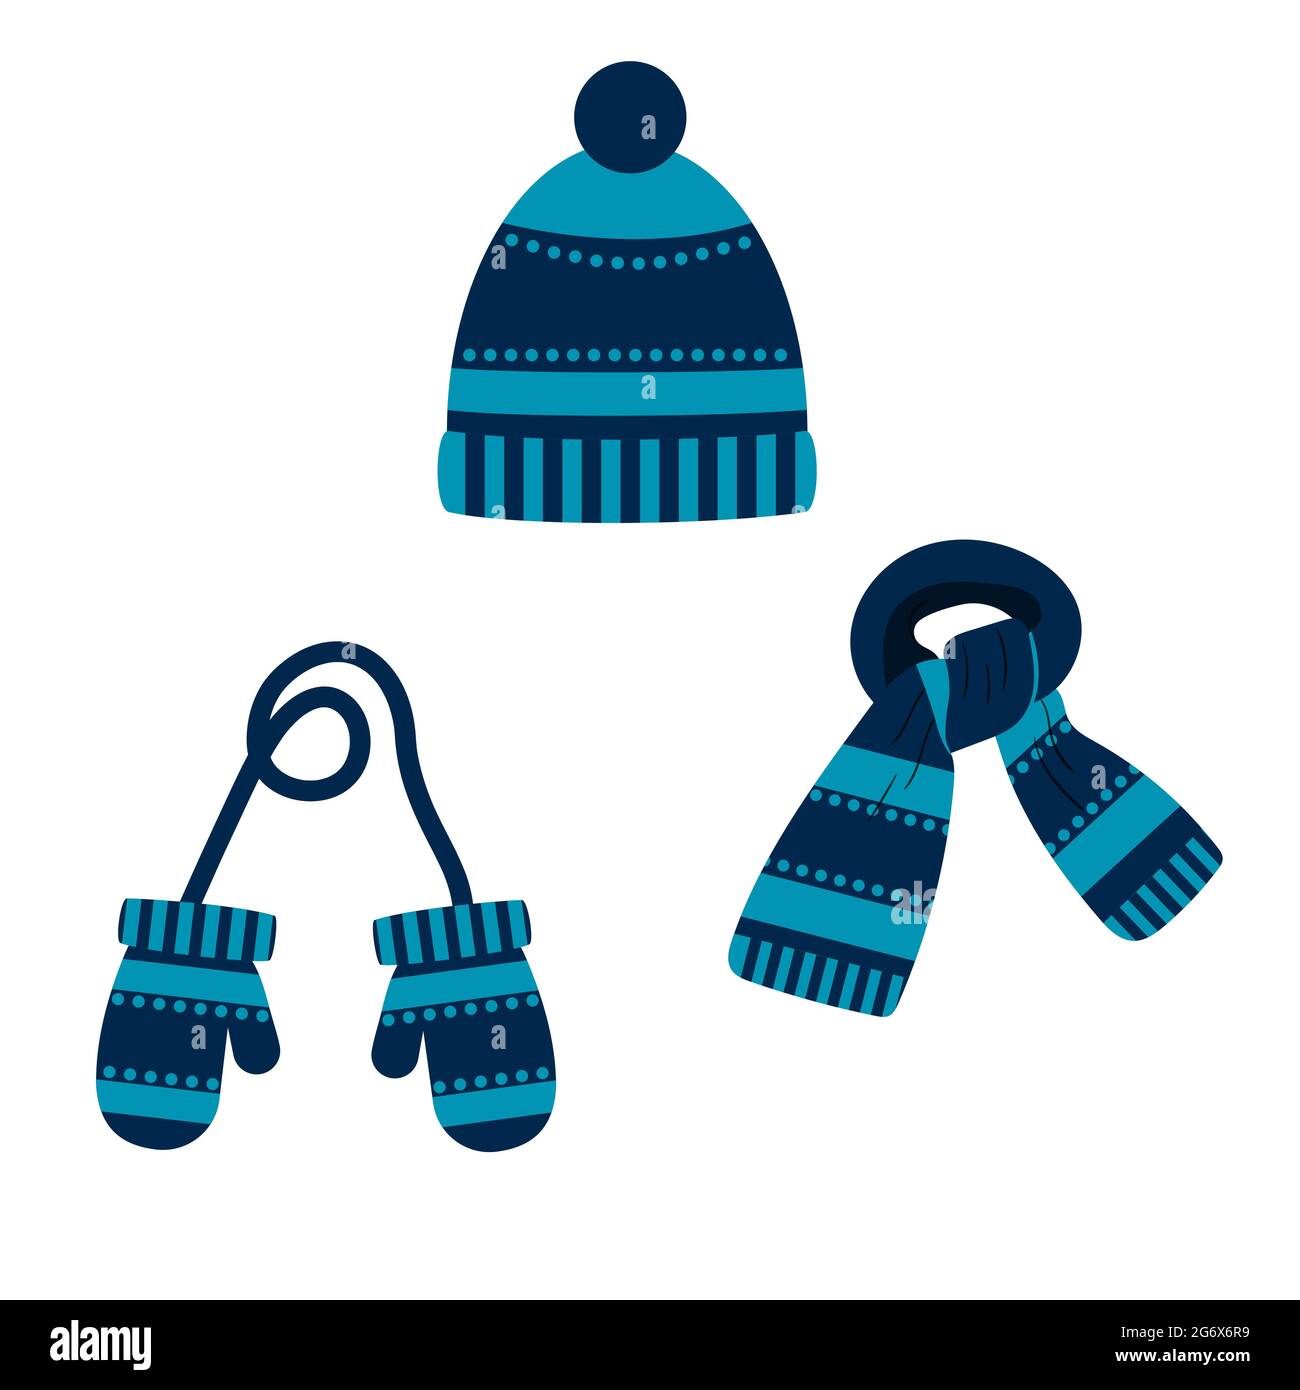 ensemble de bonnet, écharpe, moufles de couleur bleue avec un motif, hiver.  vecteur isolé sur un fond blanc Image Vectorielle Stock - Alamy